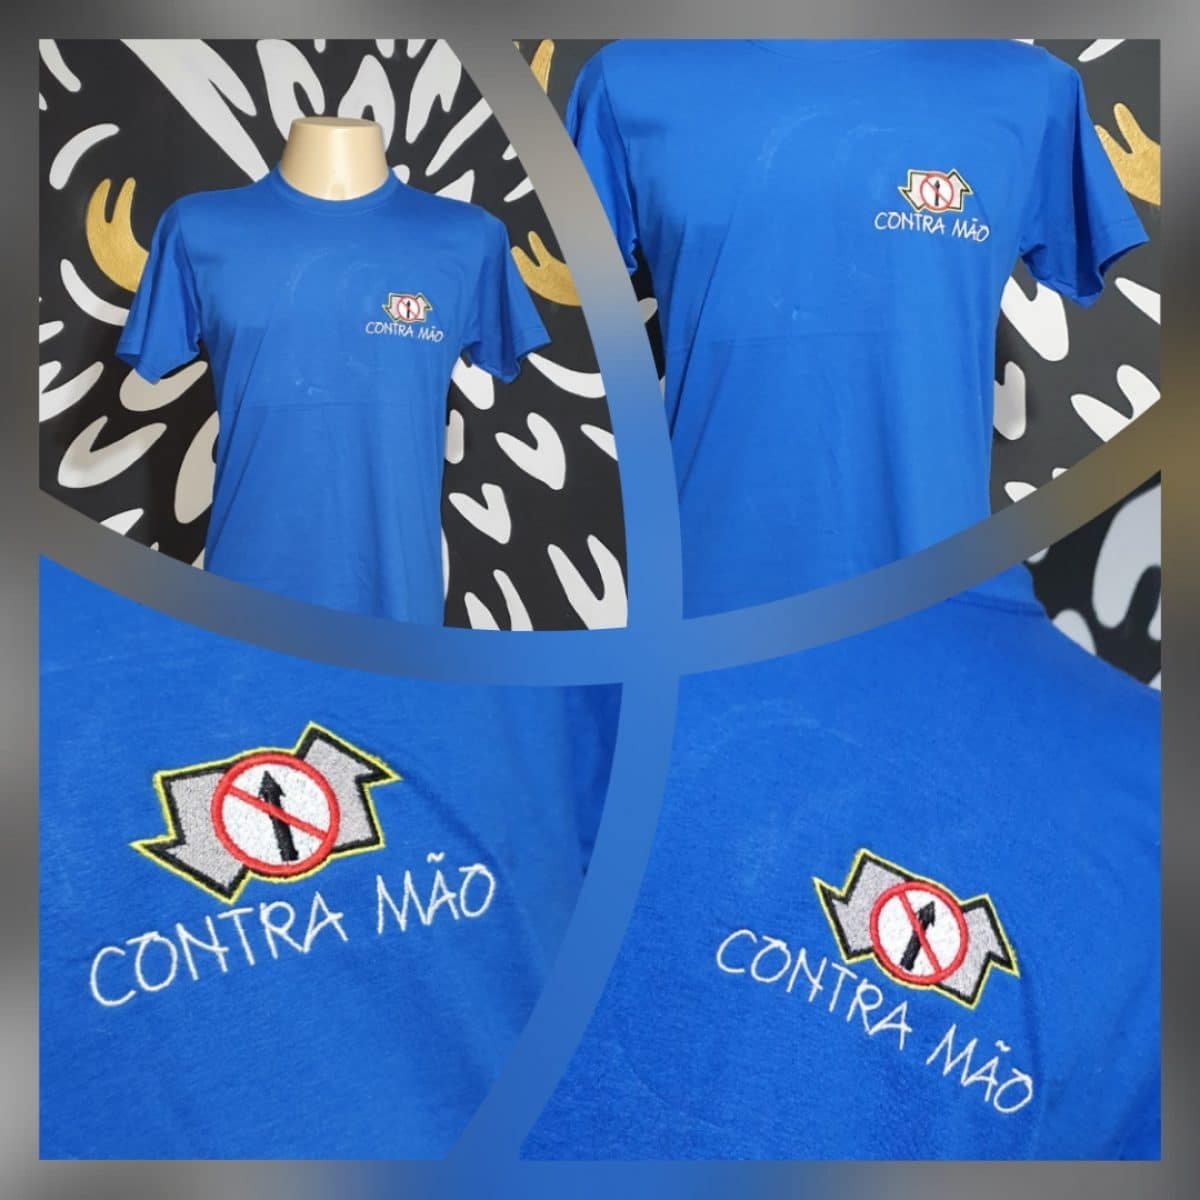 Camiseta Bordada Oficial Contra Mão by Bordado & Cia - @bordado.cia; @dj.vadao; @danceteriacontramao; #danceteriacontramao